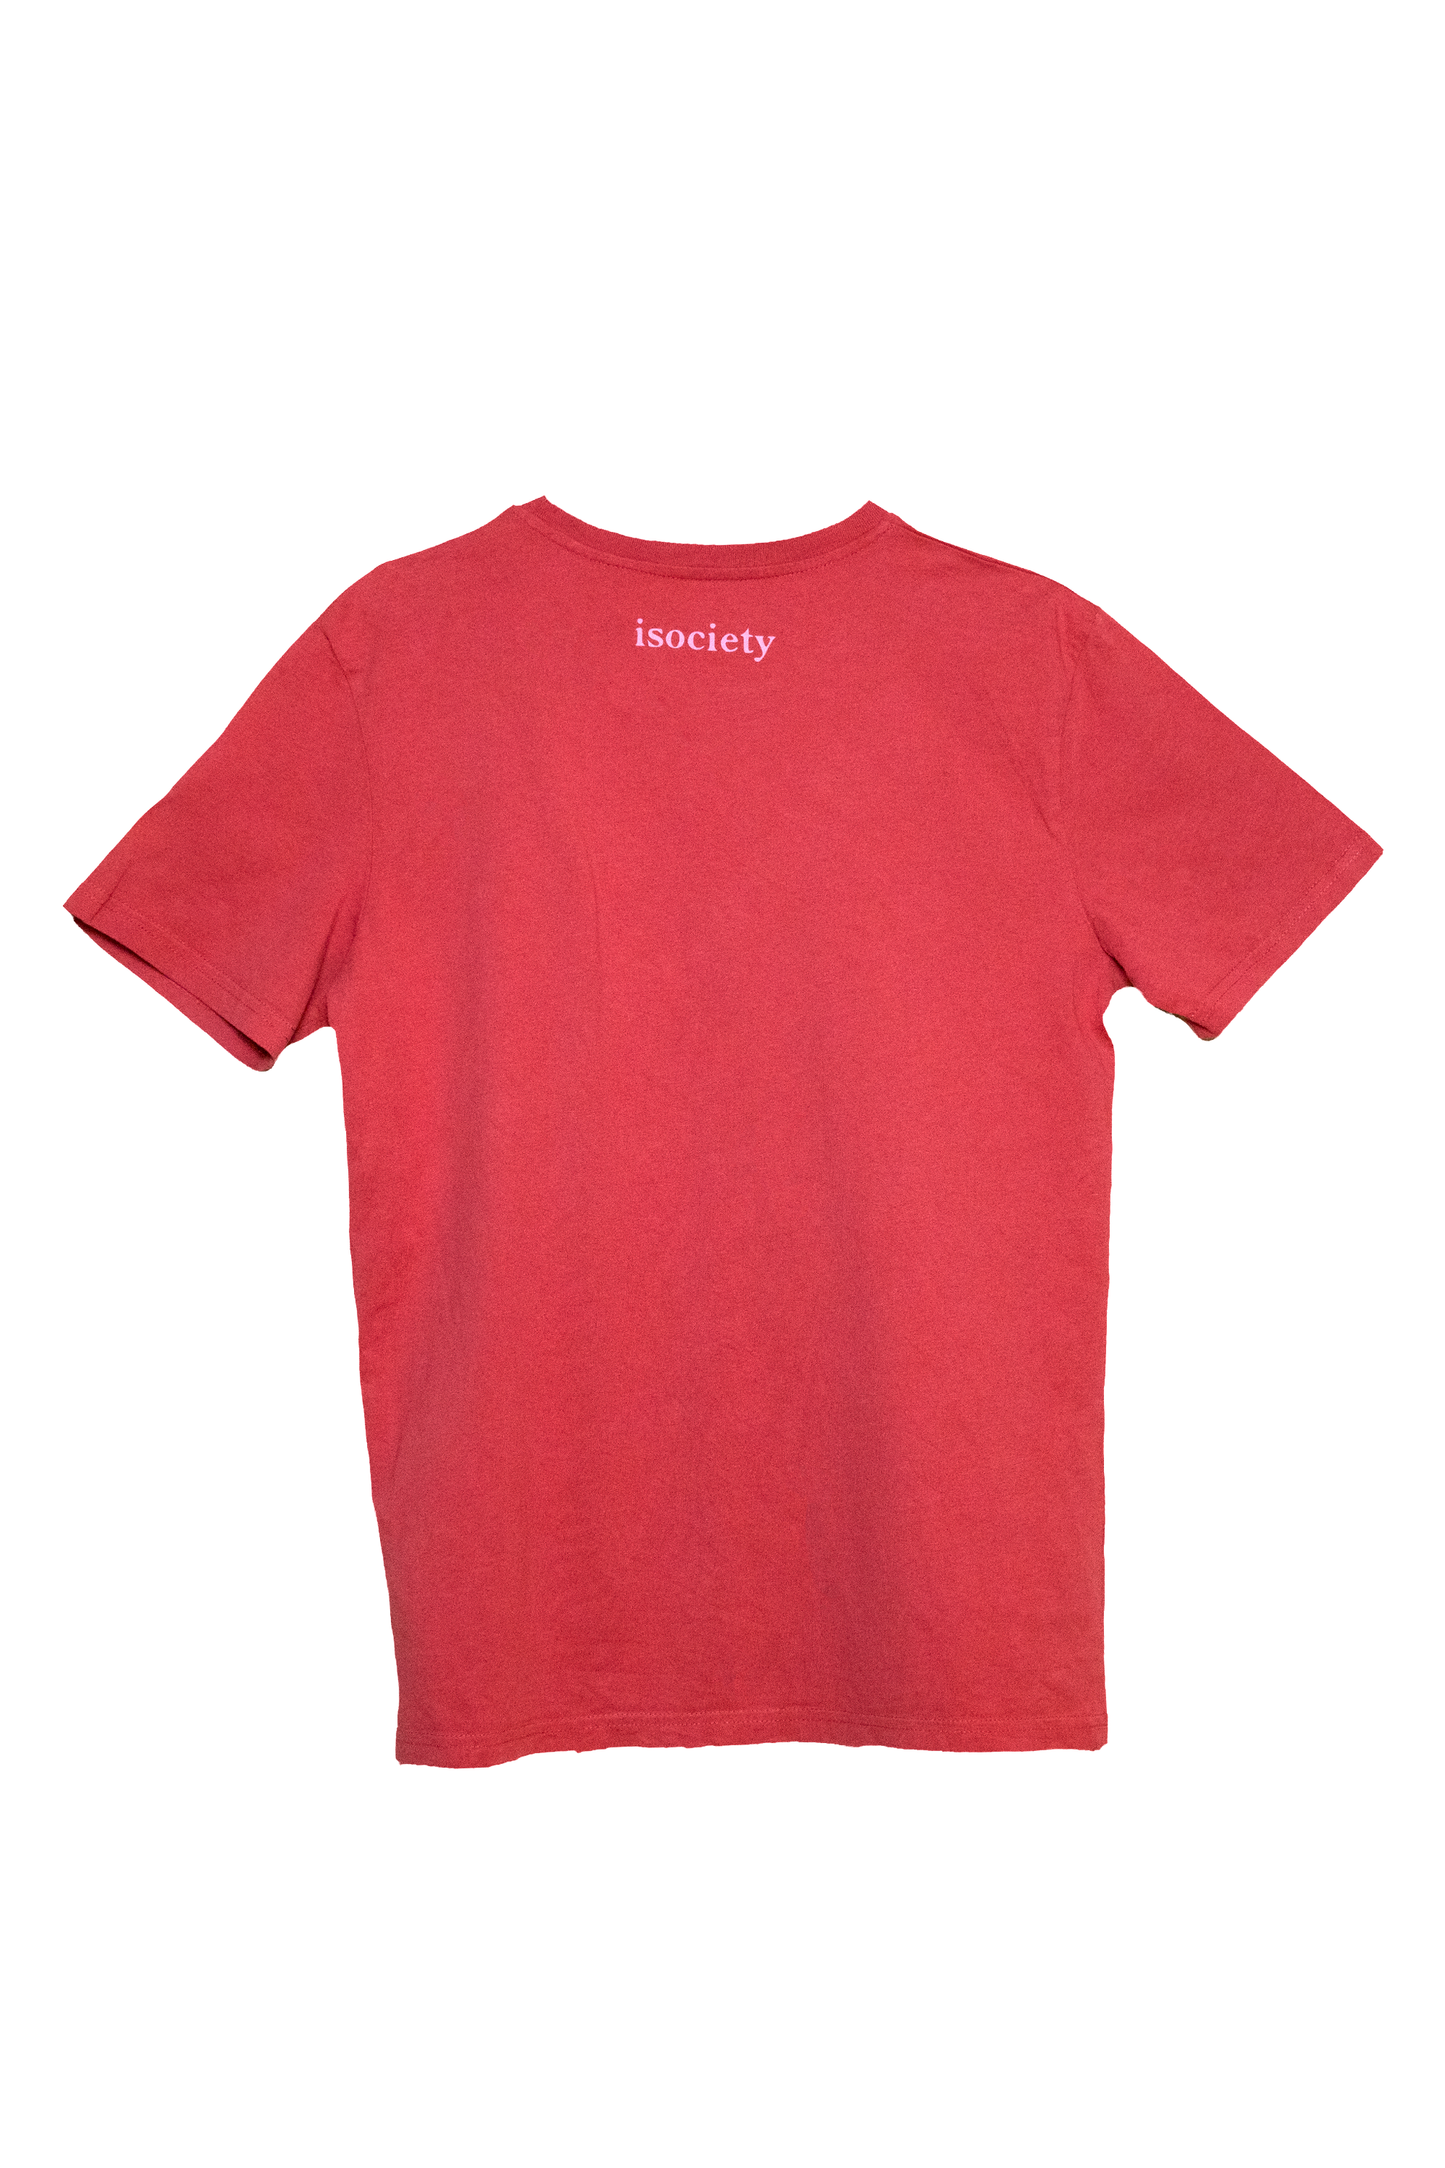 Das T-Shirt für Erwachsene mit dem Namen Maxi von hinten. Maxi hat die  Farbe Carmine Red. Im Nackenbereich ist die Schrift isociety zu erkennen. 